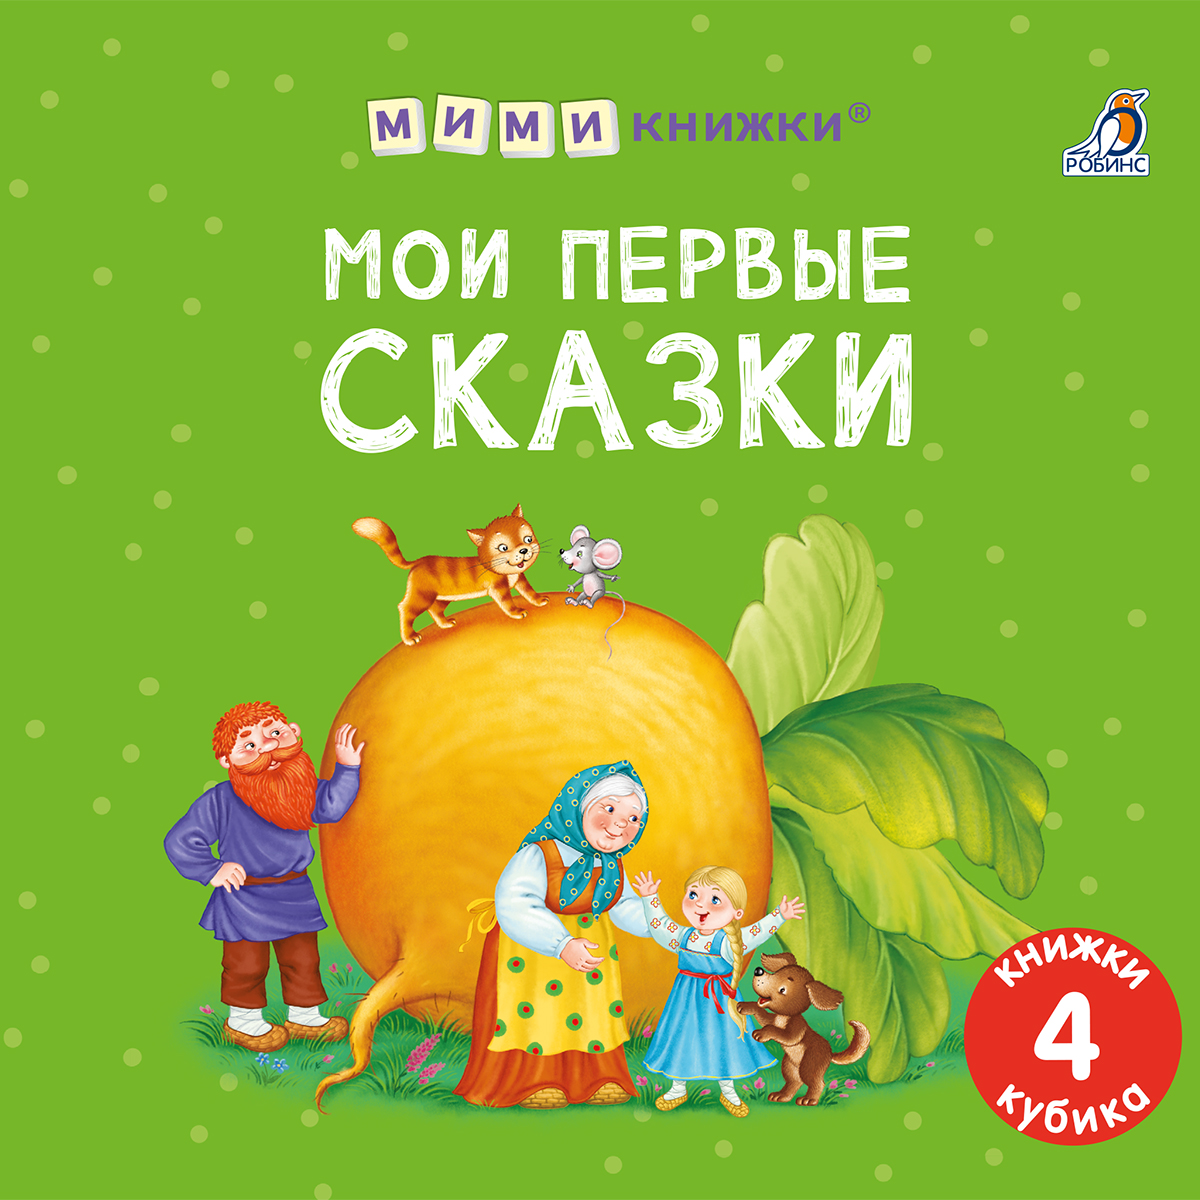 развивающие книжки clever мои первые слова 15 книжек кубиков русский язык Набор книжек-кубиков Мои первые сказки